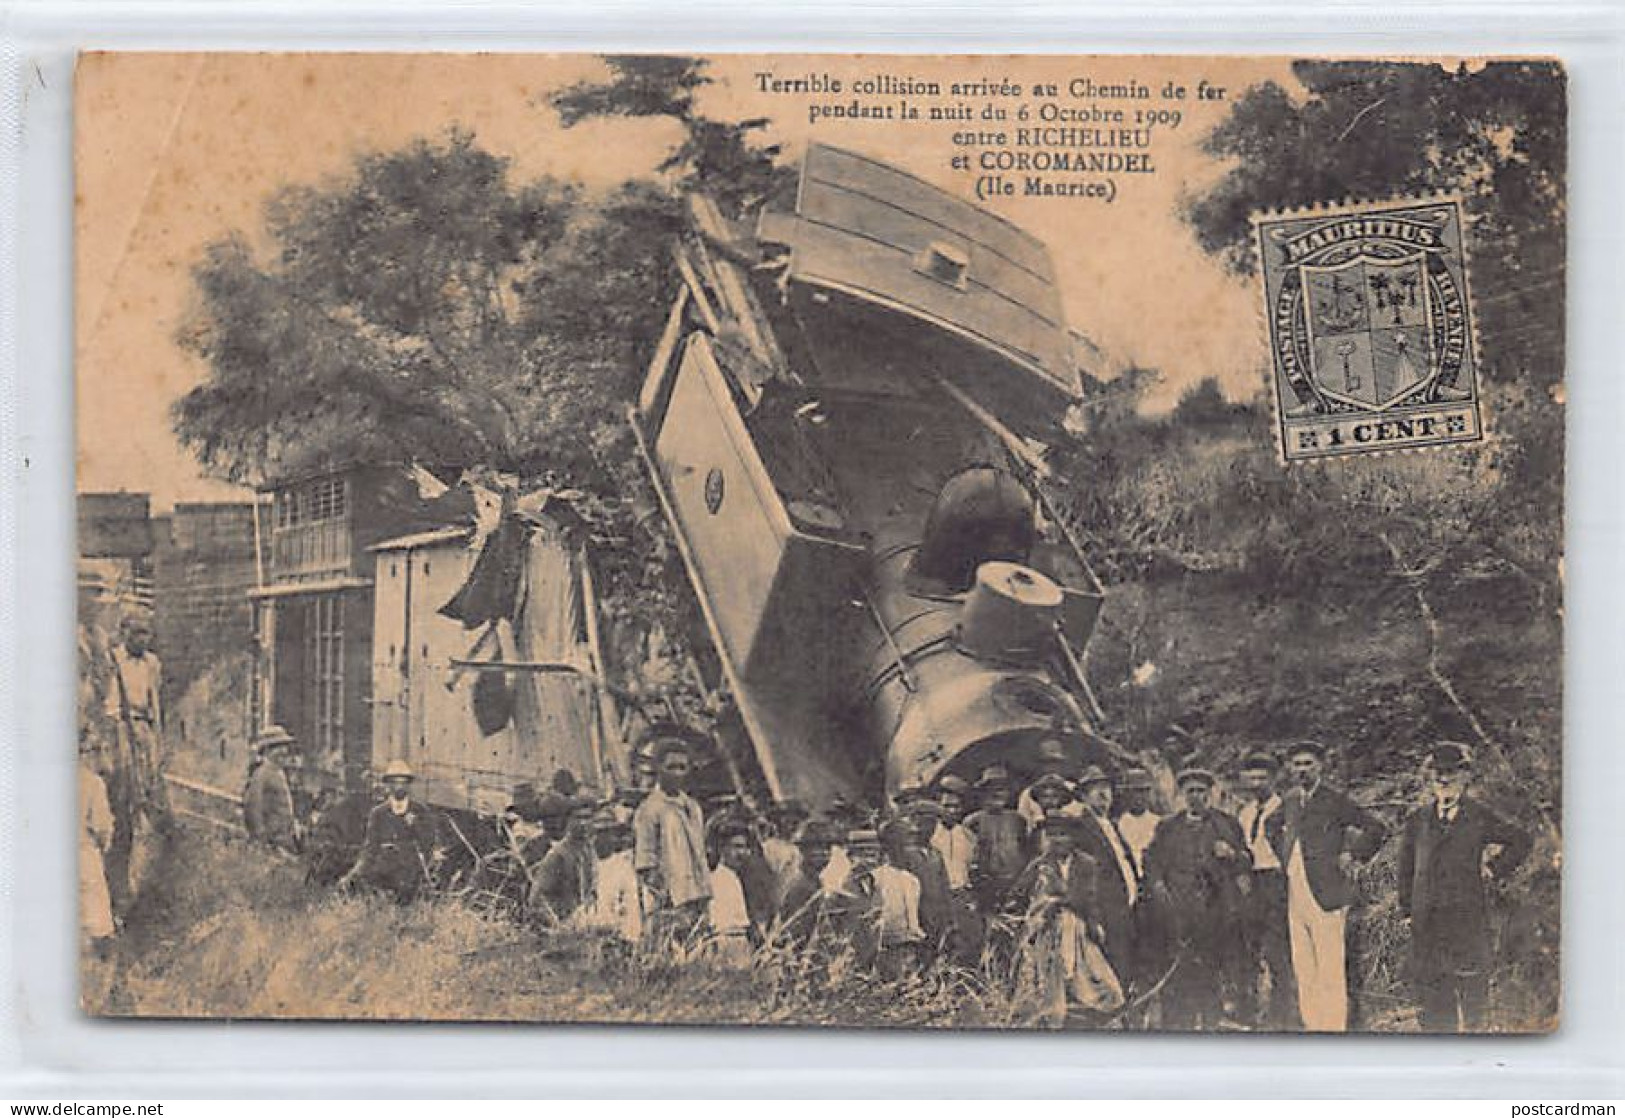 Mauritius - Terrible Collision Arrivée Au Chemin De Fer Pendant La Nuit Du 6 Octobre 1909 Entre Richelieu Et Coromandel  - Mauritius